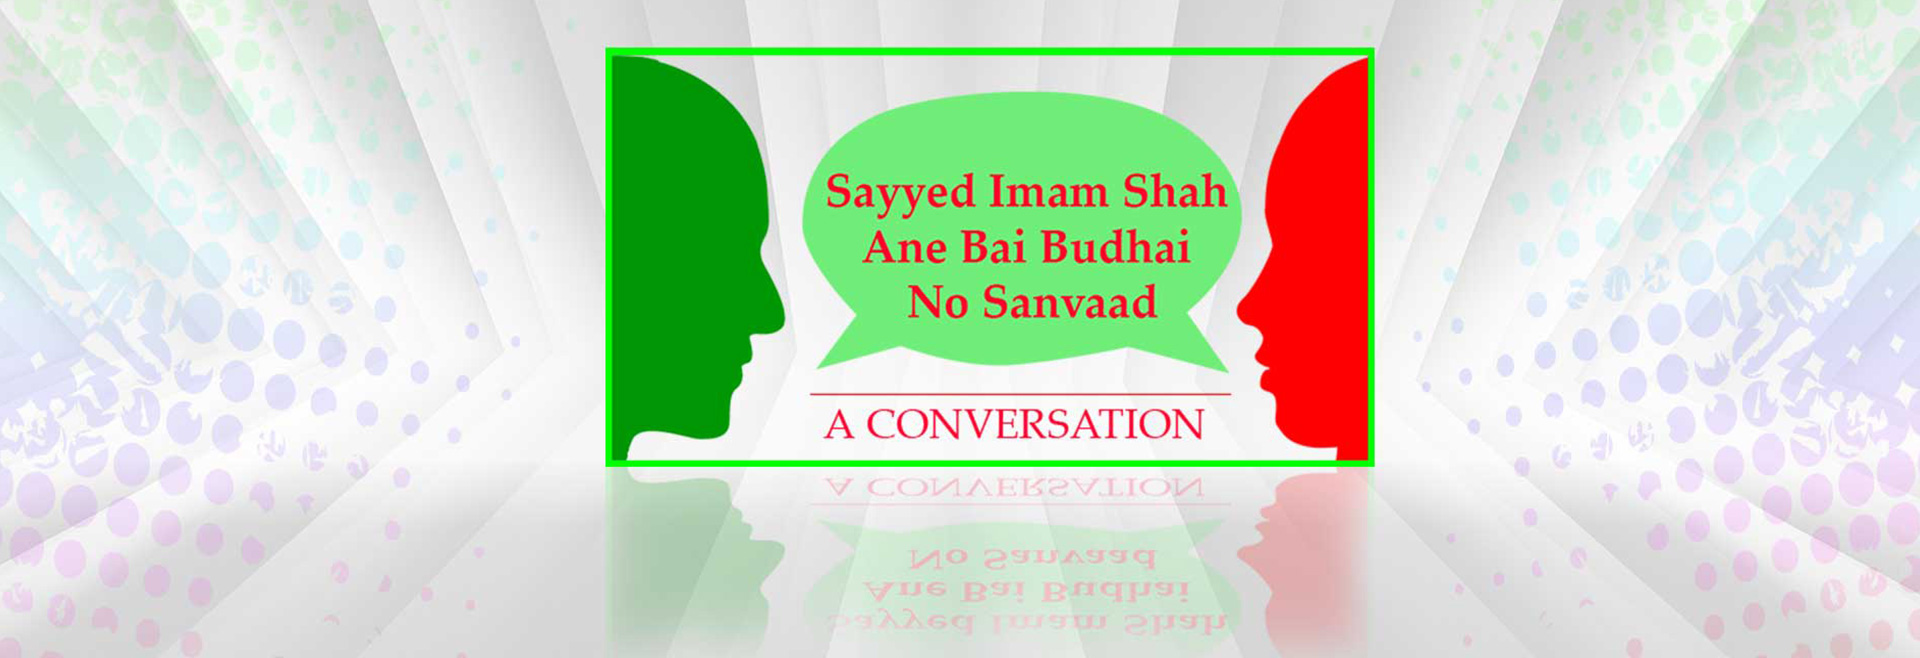 Sayyed Imam Shah Ane Bai Budhai No Sanvaad